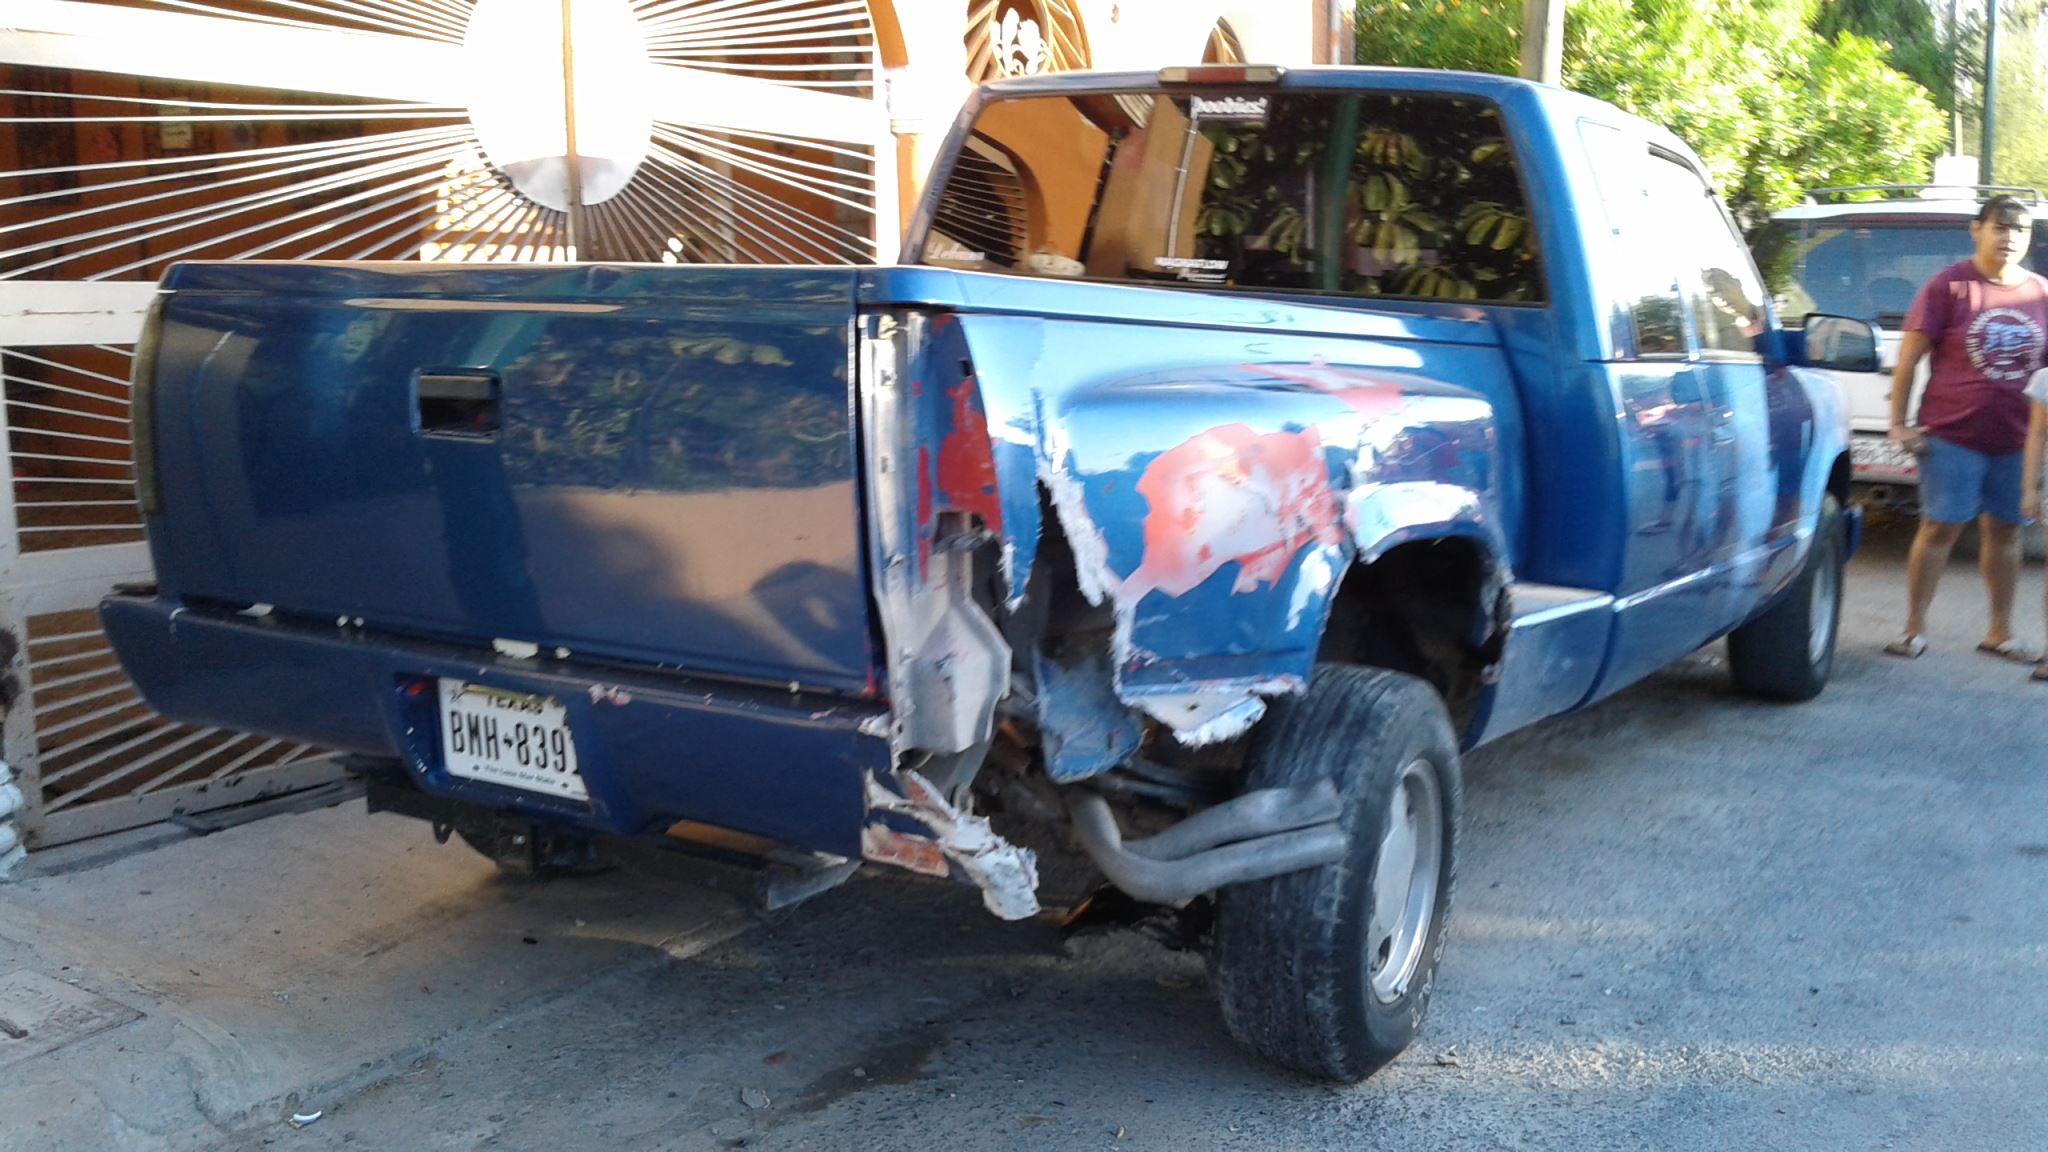 ARRASTRA. Esta camioneta pick-up, marca Chevrolet, cabina y media, color azul, fue arrastrada por lo menos 20 metros, tras haber sido impactada por un automóvil Mazda que terminó volcado en la colonia Sarabia.(foto: Heriberto Rodríguez)